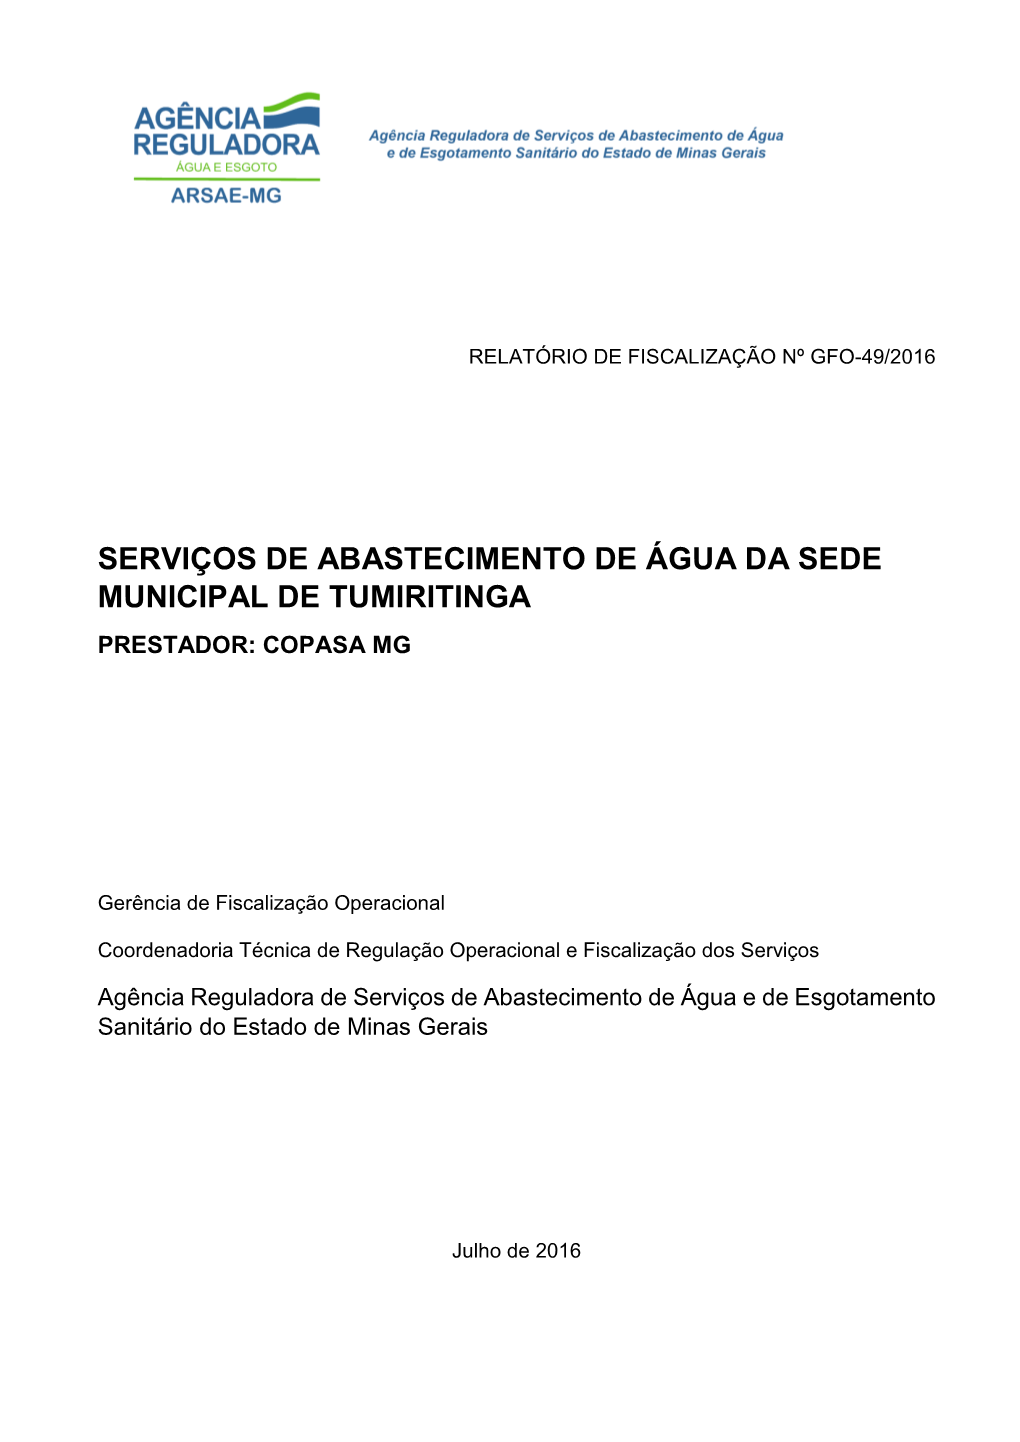 Serviços De Abastecimento De Água Da Sede Municipal De Tumiritinga Prestador: Copasa Mg